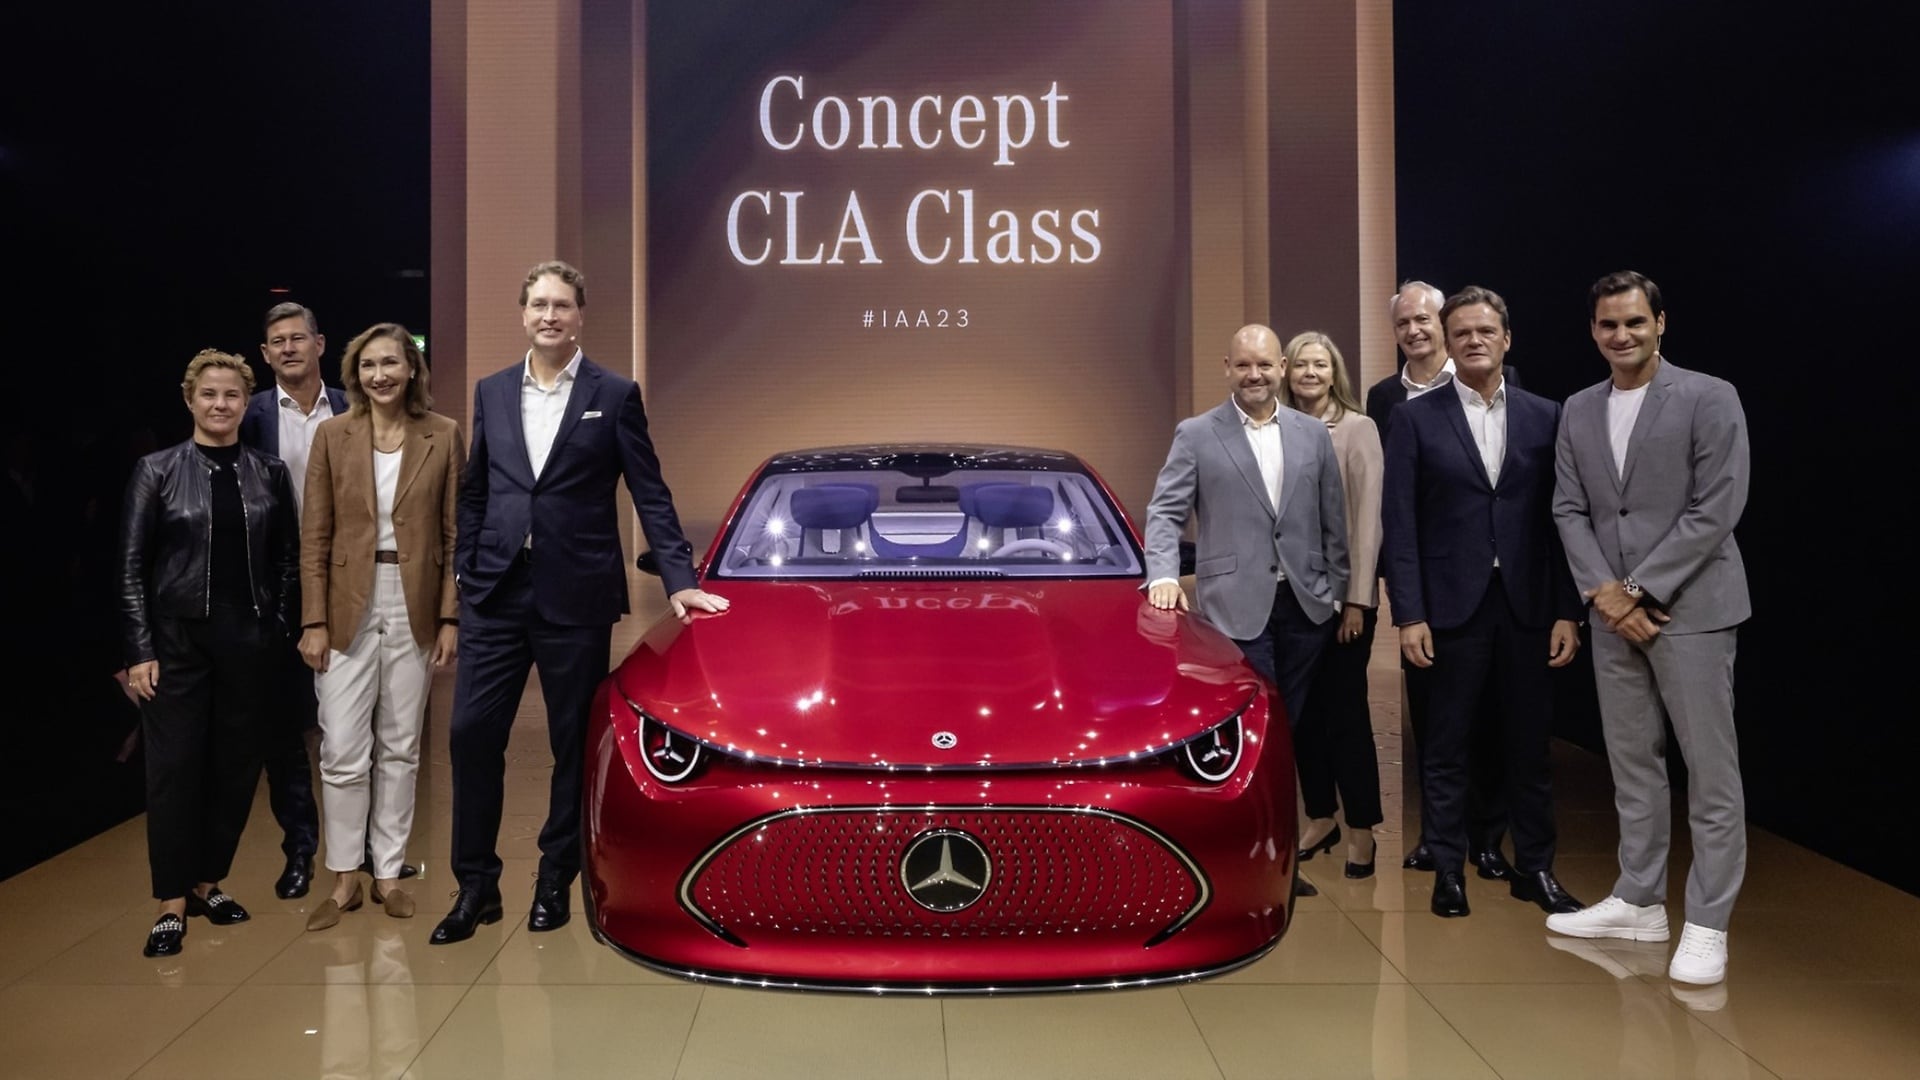 Der Mercedes-Benz Vorstand mit Roger Federer und dem Concept CLA Class.